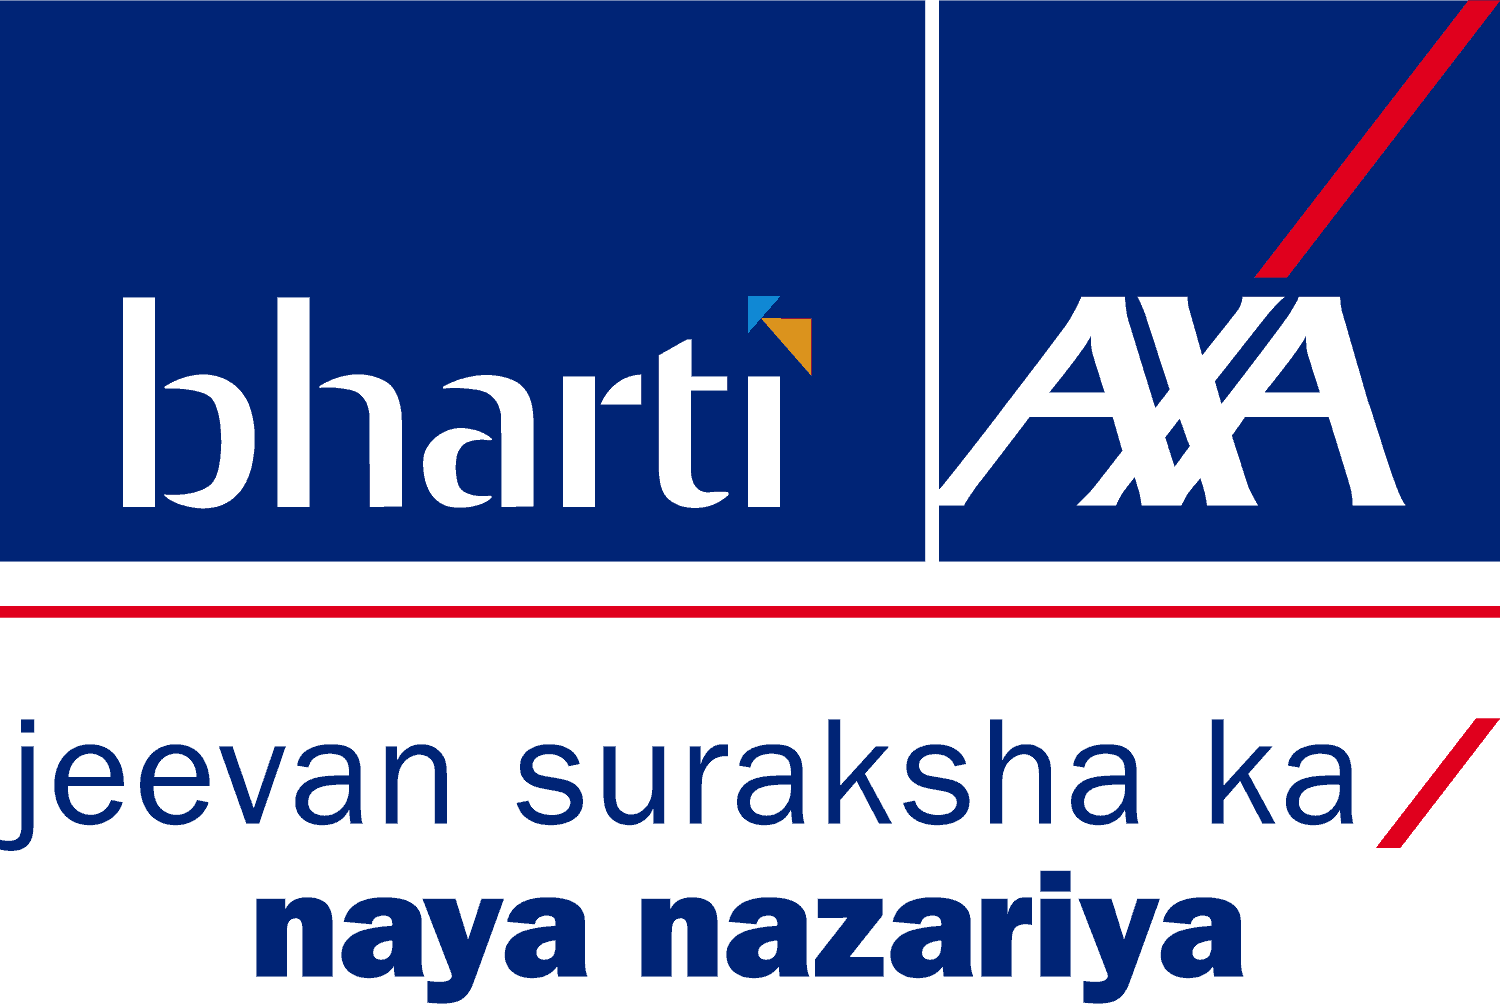 bharti-axa-life-insurance-logo-freelogovectors.net_